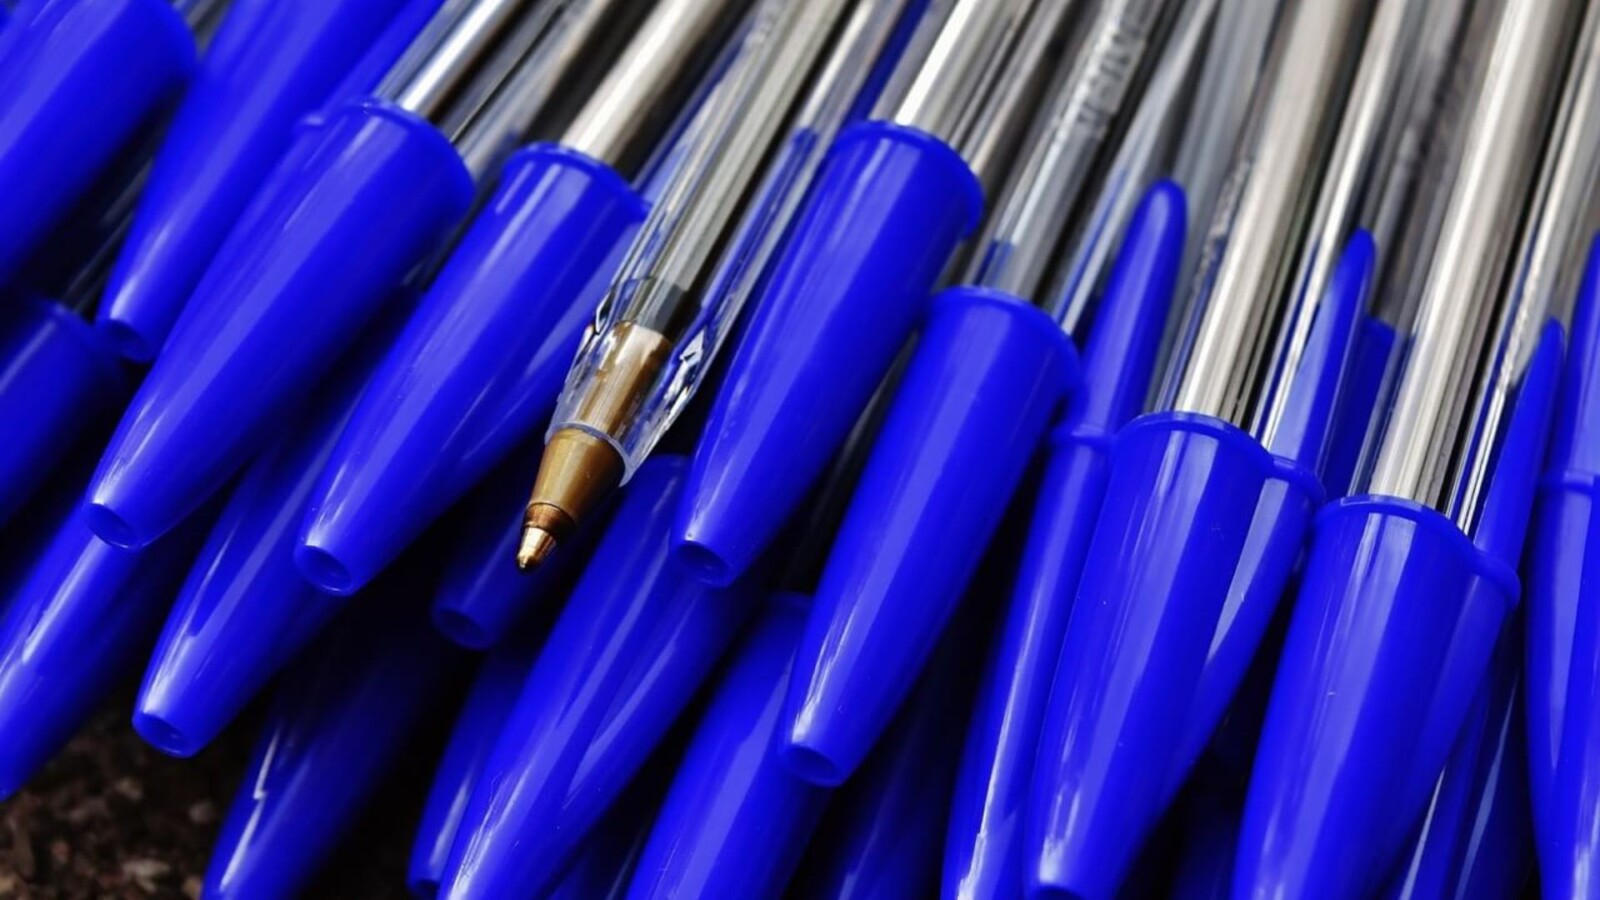 Bolígrafos